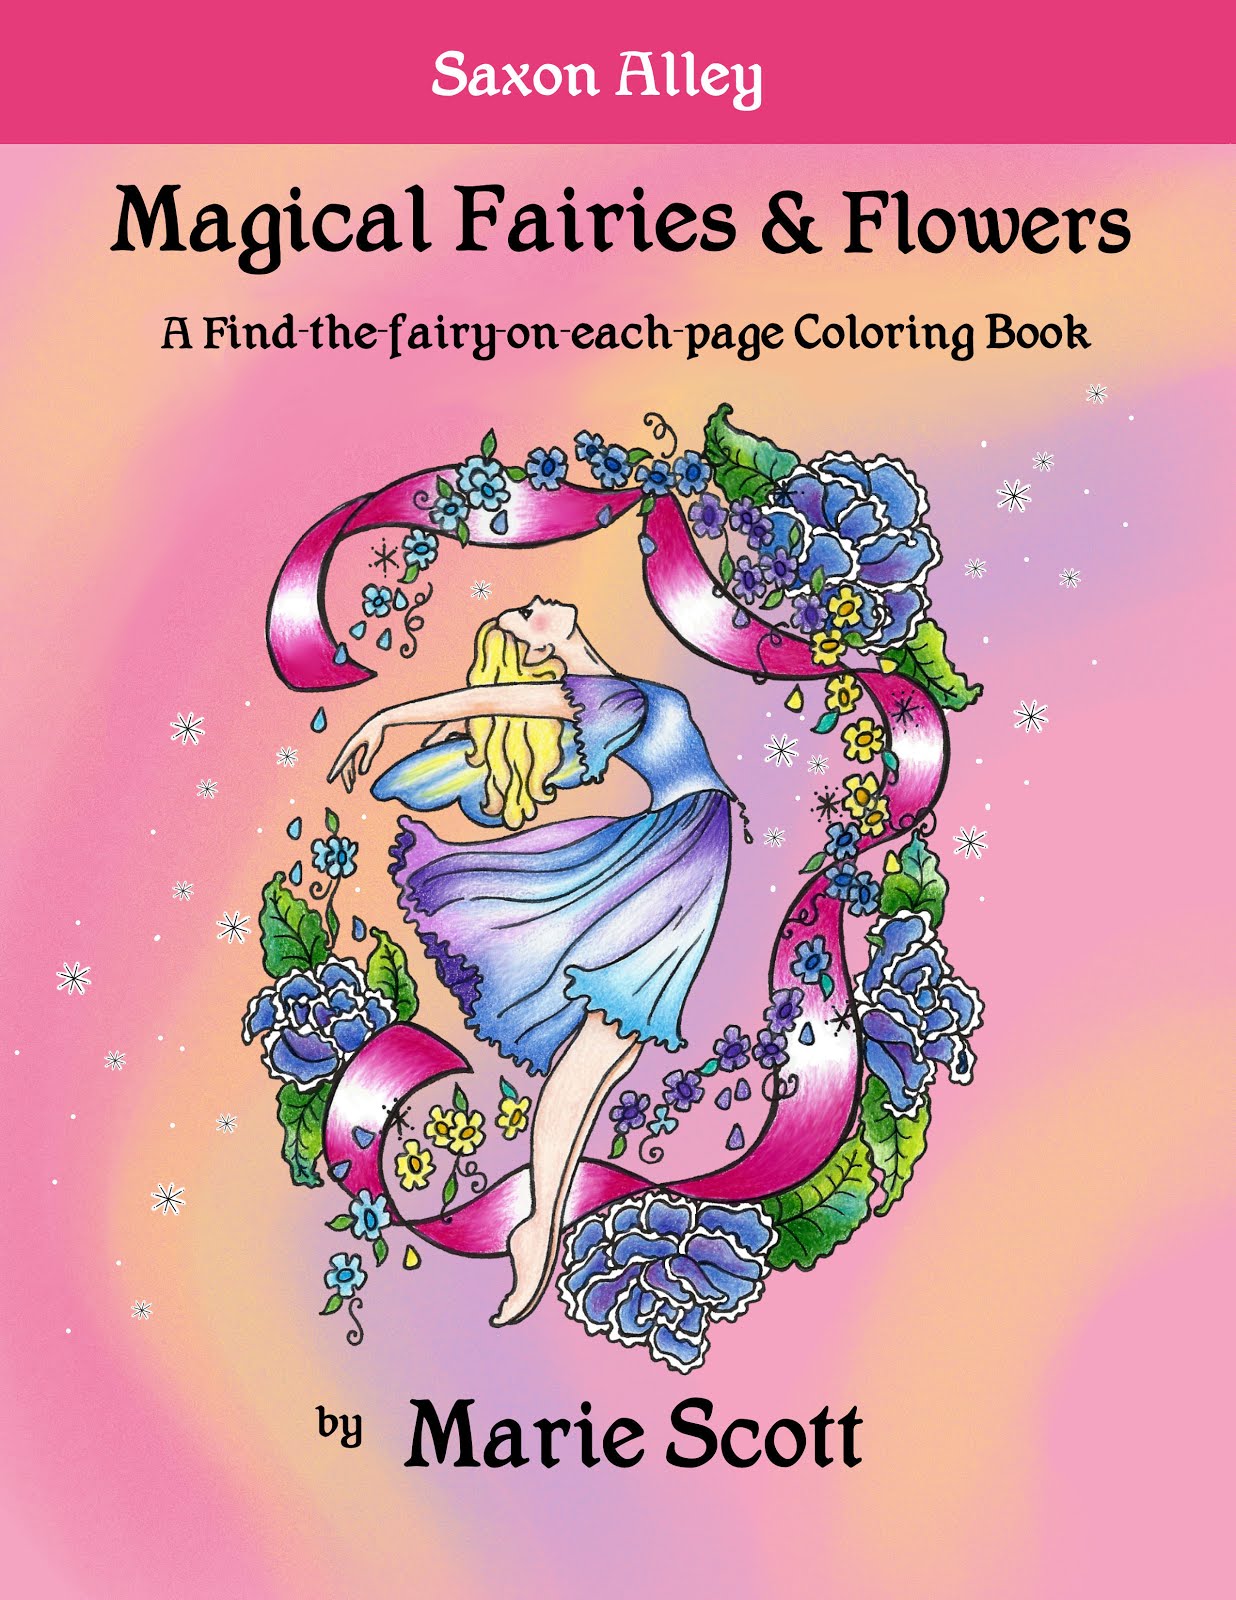 Magical Fairies & Flowers